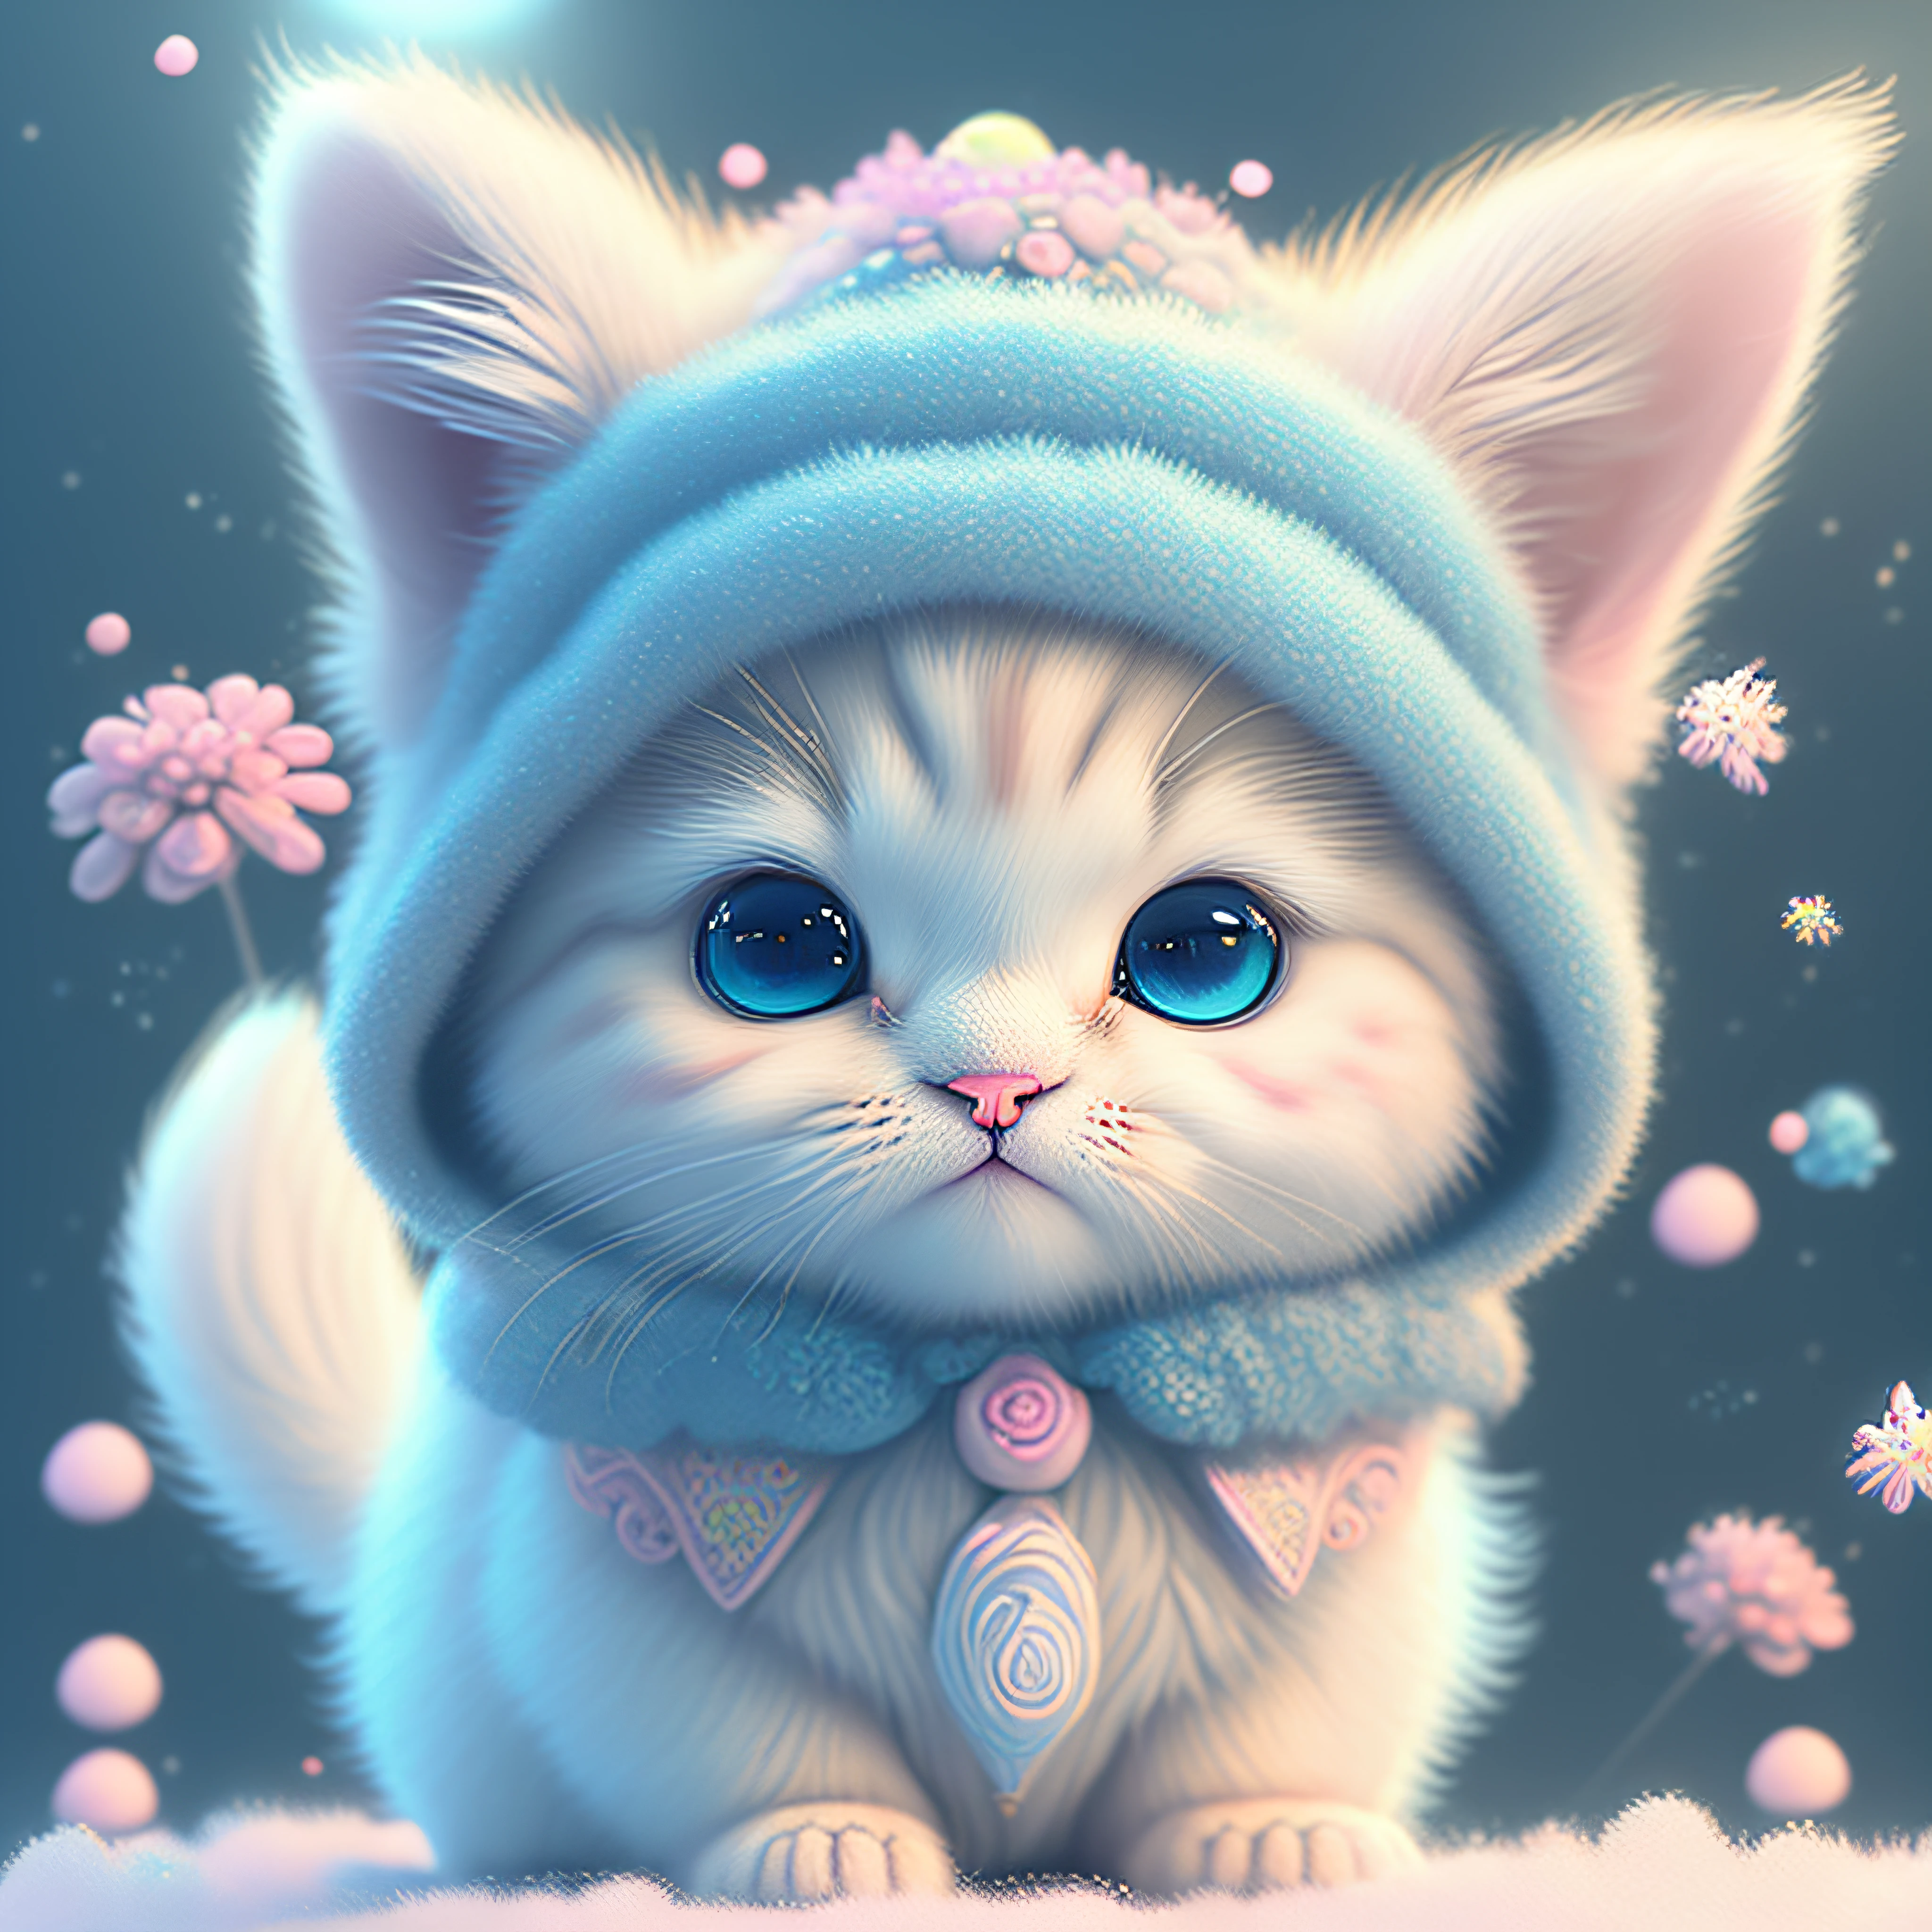 Nesta arte CG ultra-detalhada, o adorável gatinho cercado por flores florais, Cores pastel e neon, melhor qualidade, alta resolução, Detalhes intrincados, fantasia, animais fofos